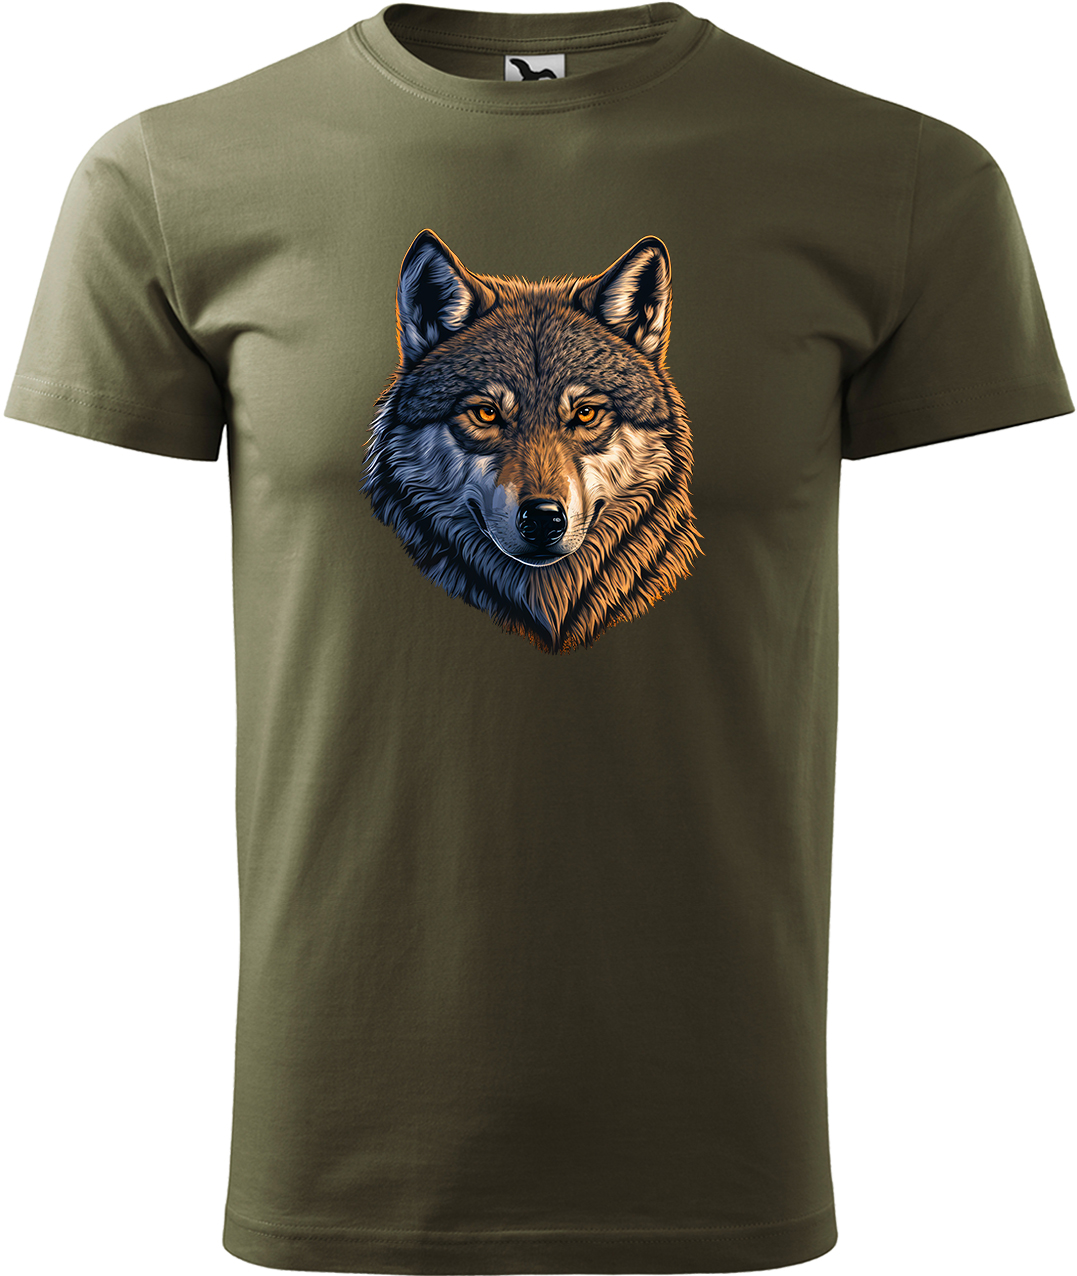 Pánské tričko s vlkem - Hlava vlka Velikost: XL, Barva: Military (69), Střih: pánský